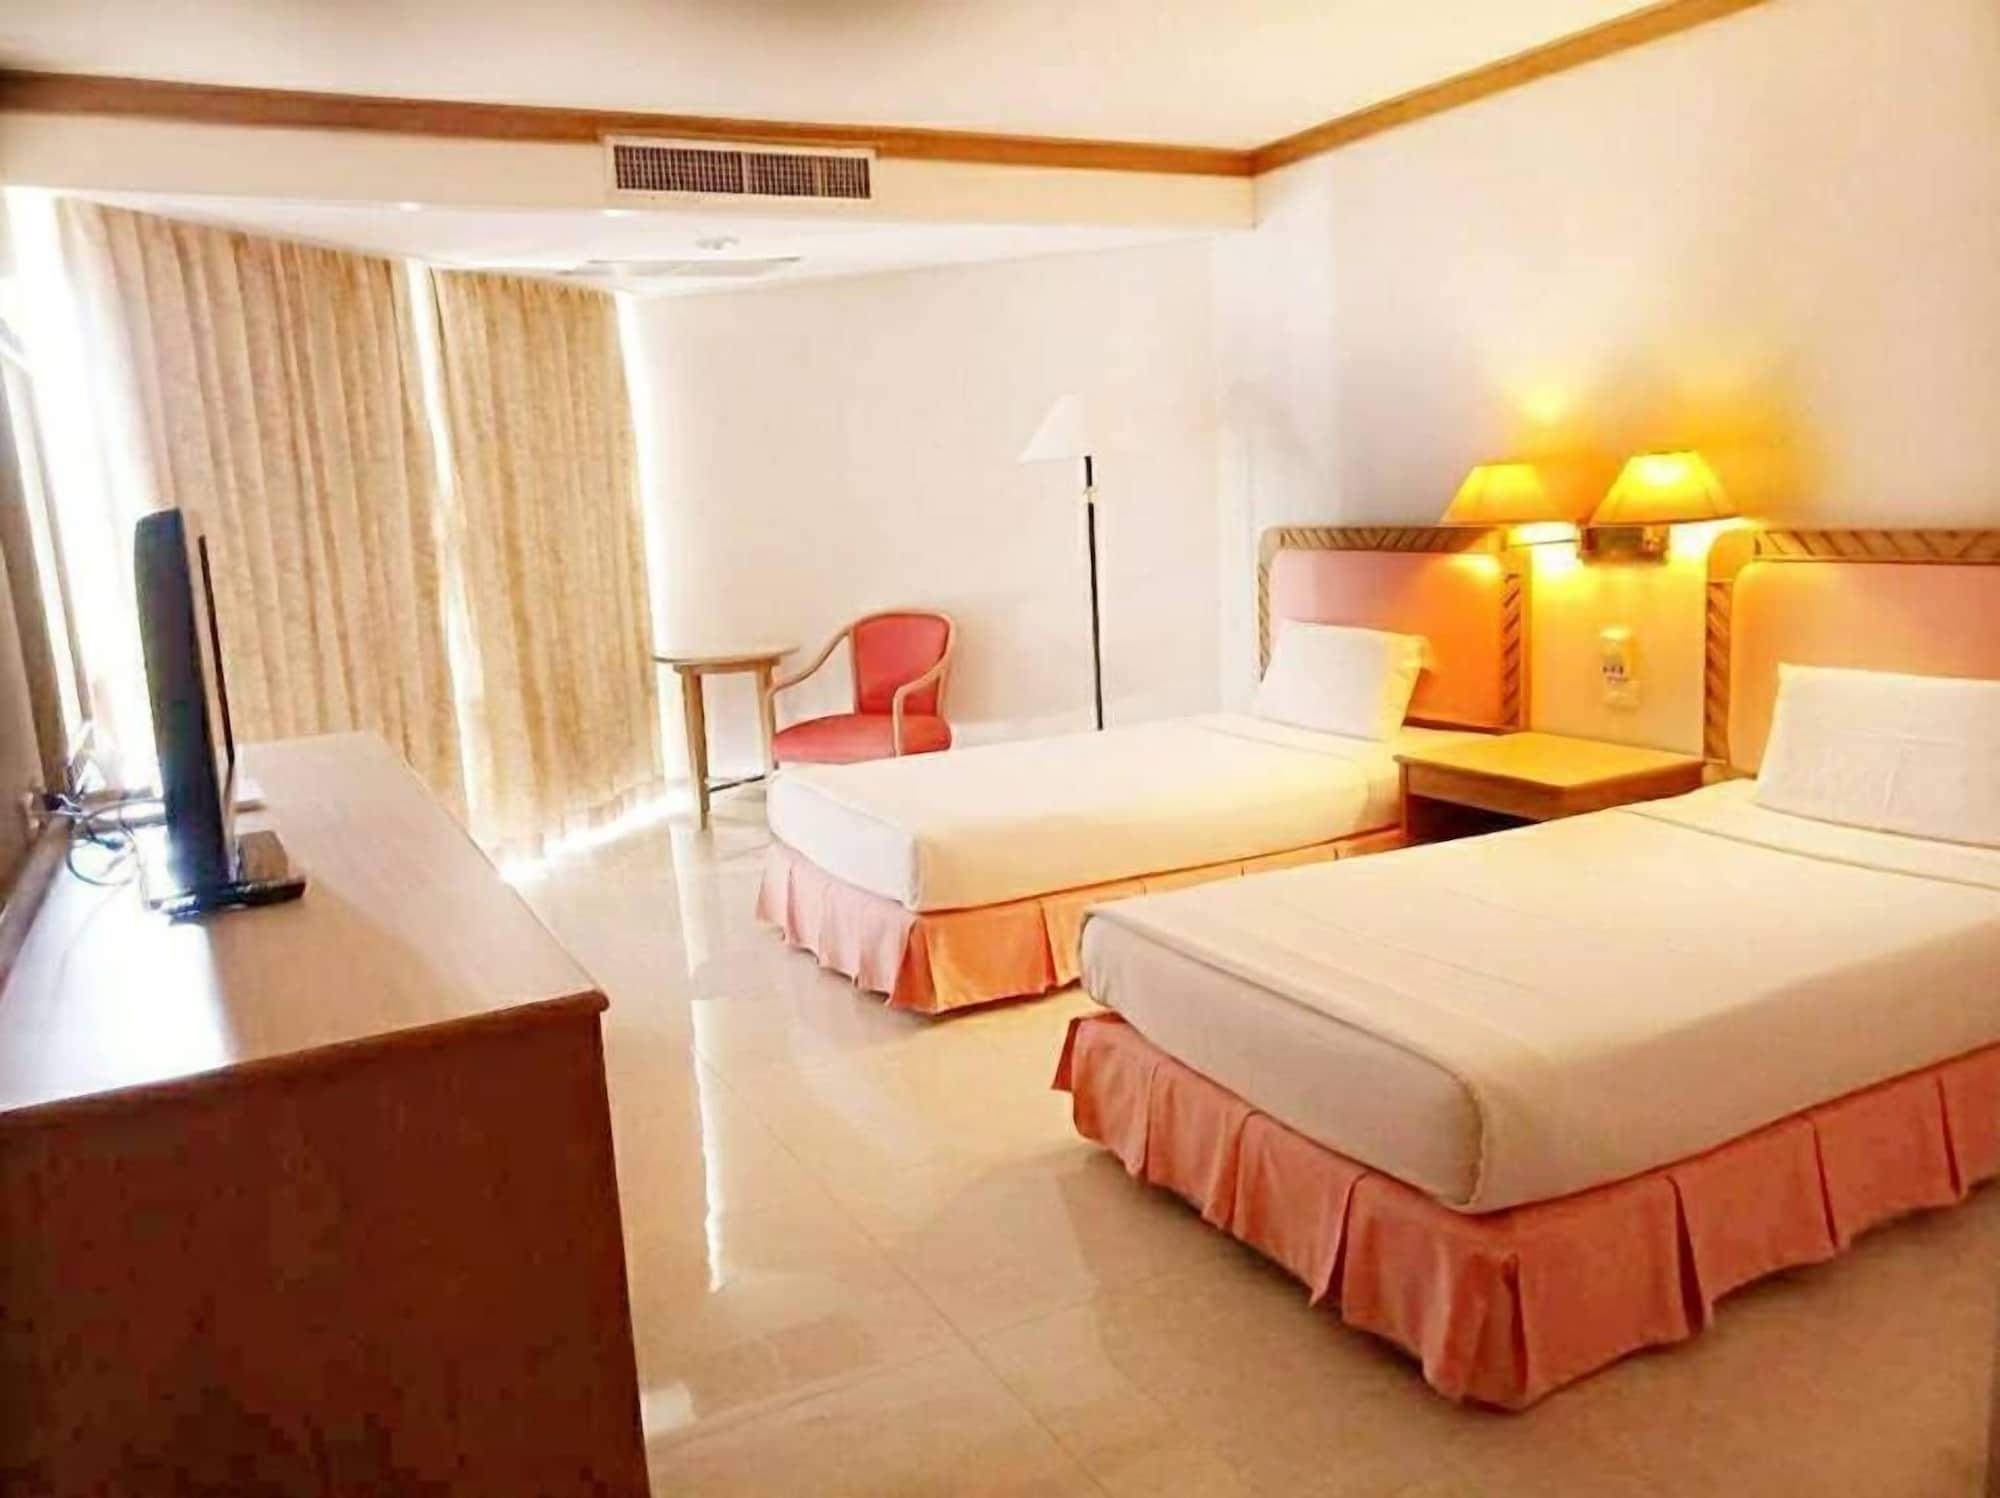 Khanom Golden Beach Hotel Exteriér fotografie